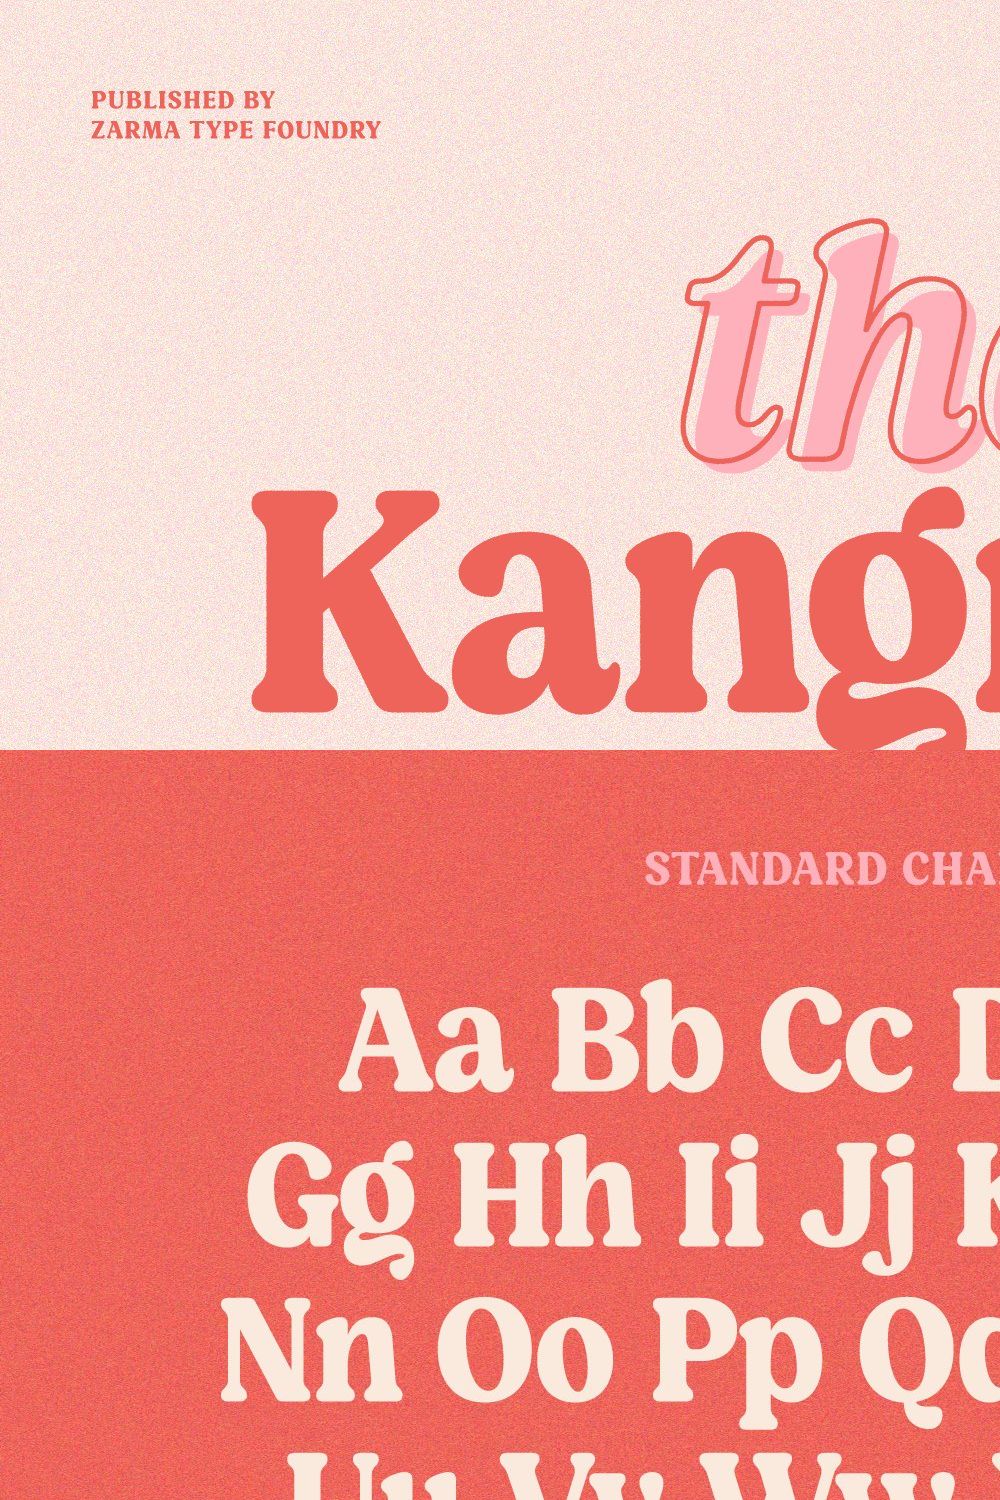 Kangmas - Nostalgic Retro Serif Font pinterest preview image.